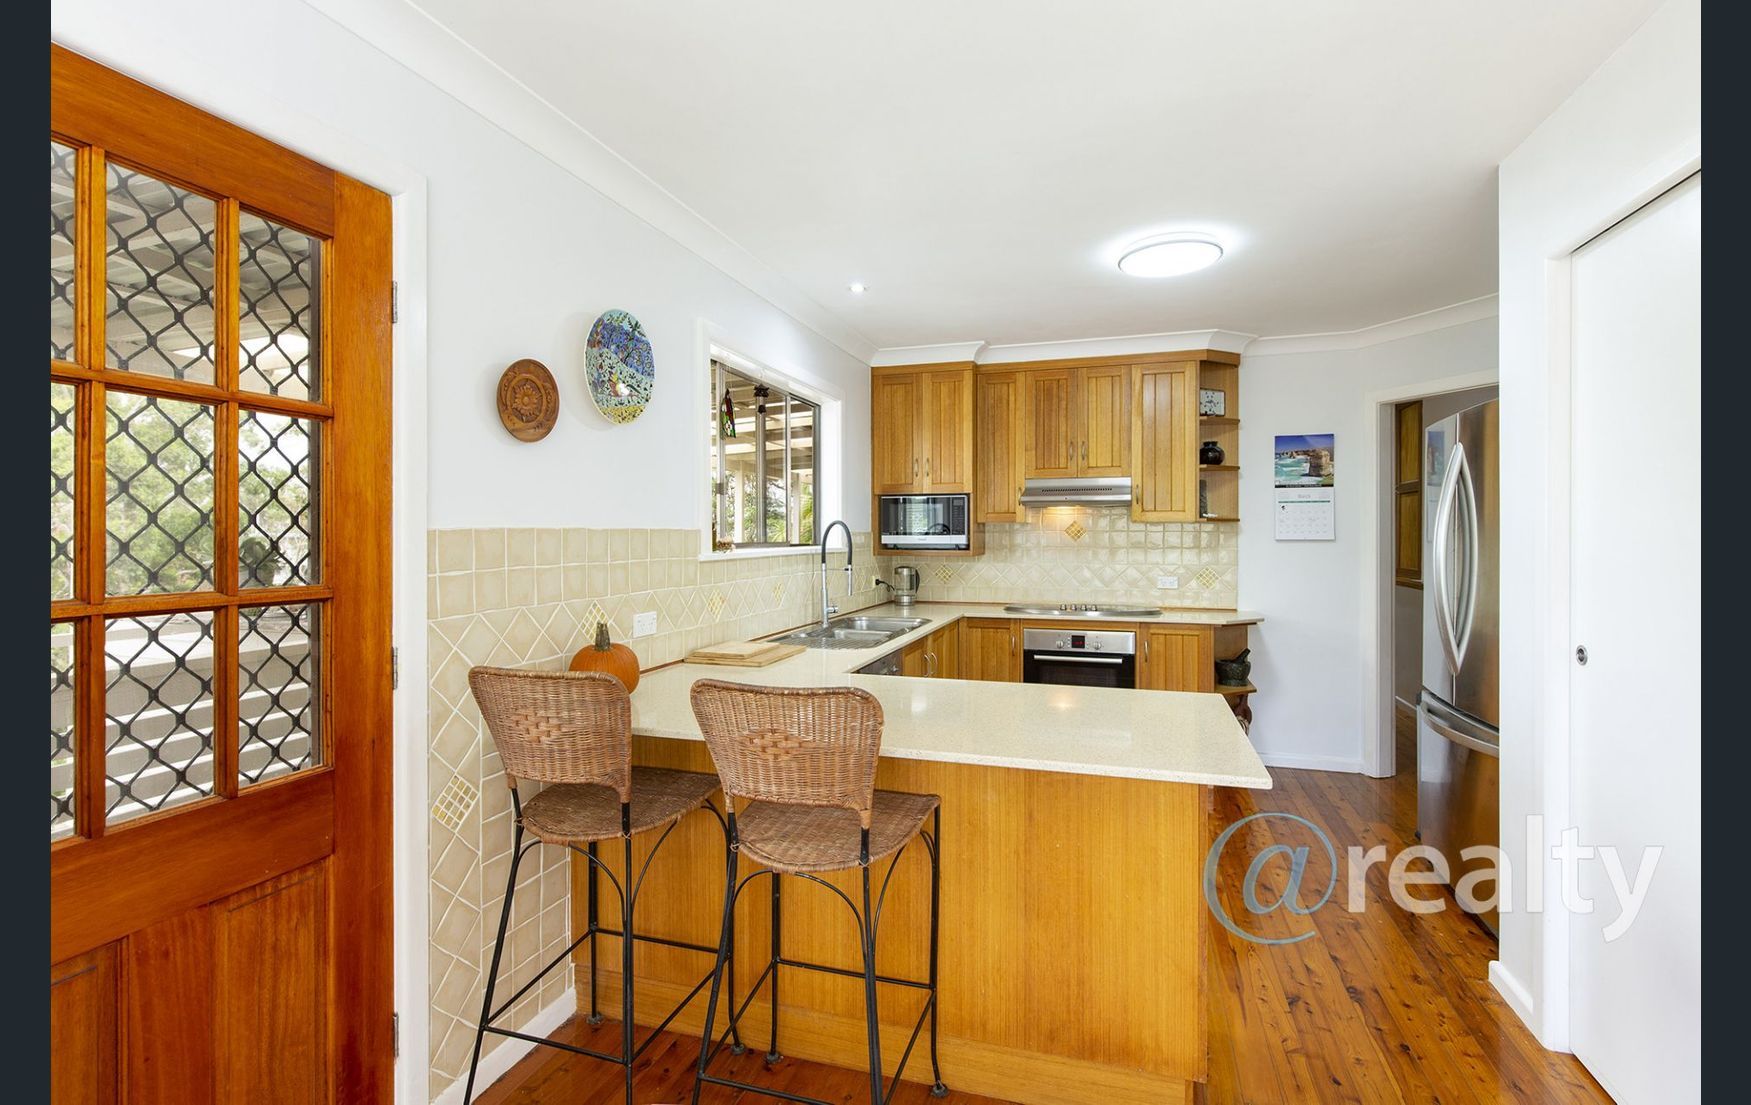 Property image of 13 Lackey Street Nambucca Heads NSW 2448 #2 | Real Estate Nambucca